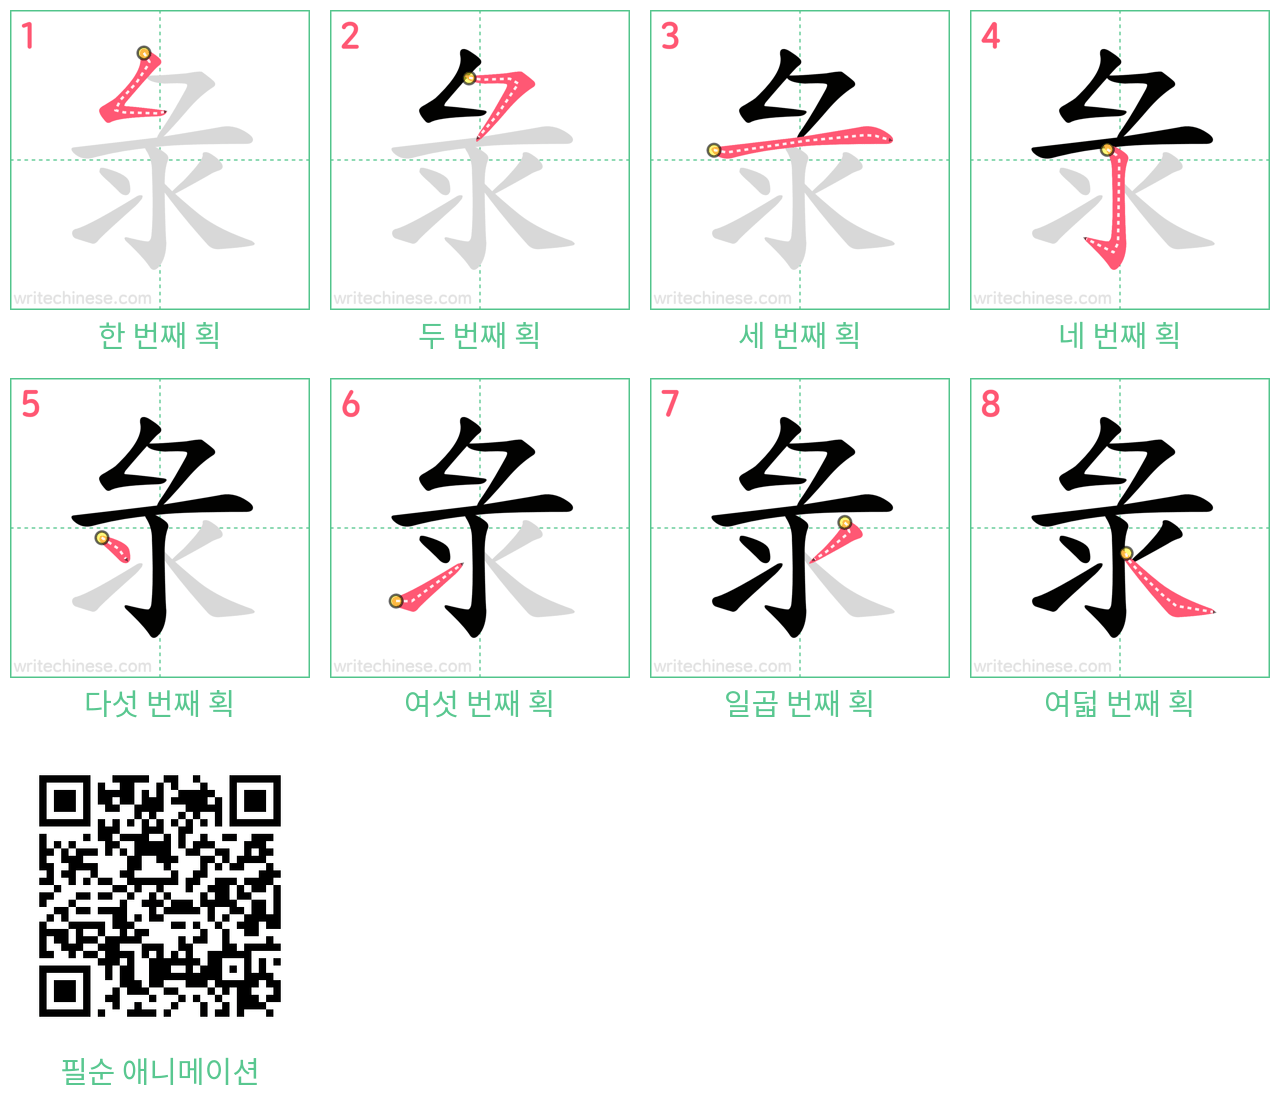 彔 step-by-step stroke order diagrams